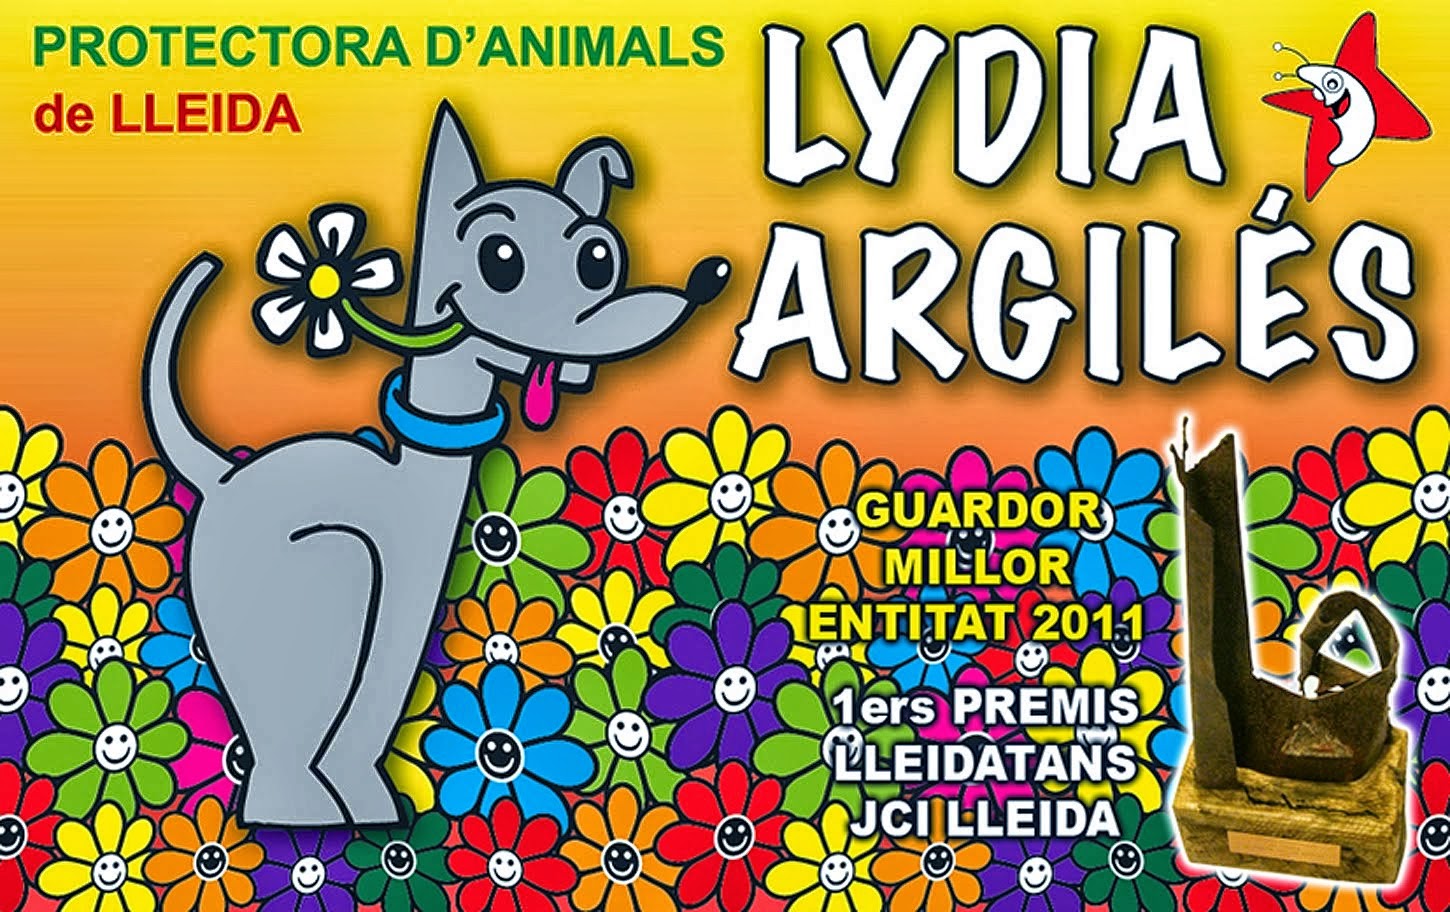 Protectora de animales Lydia Argilés